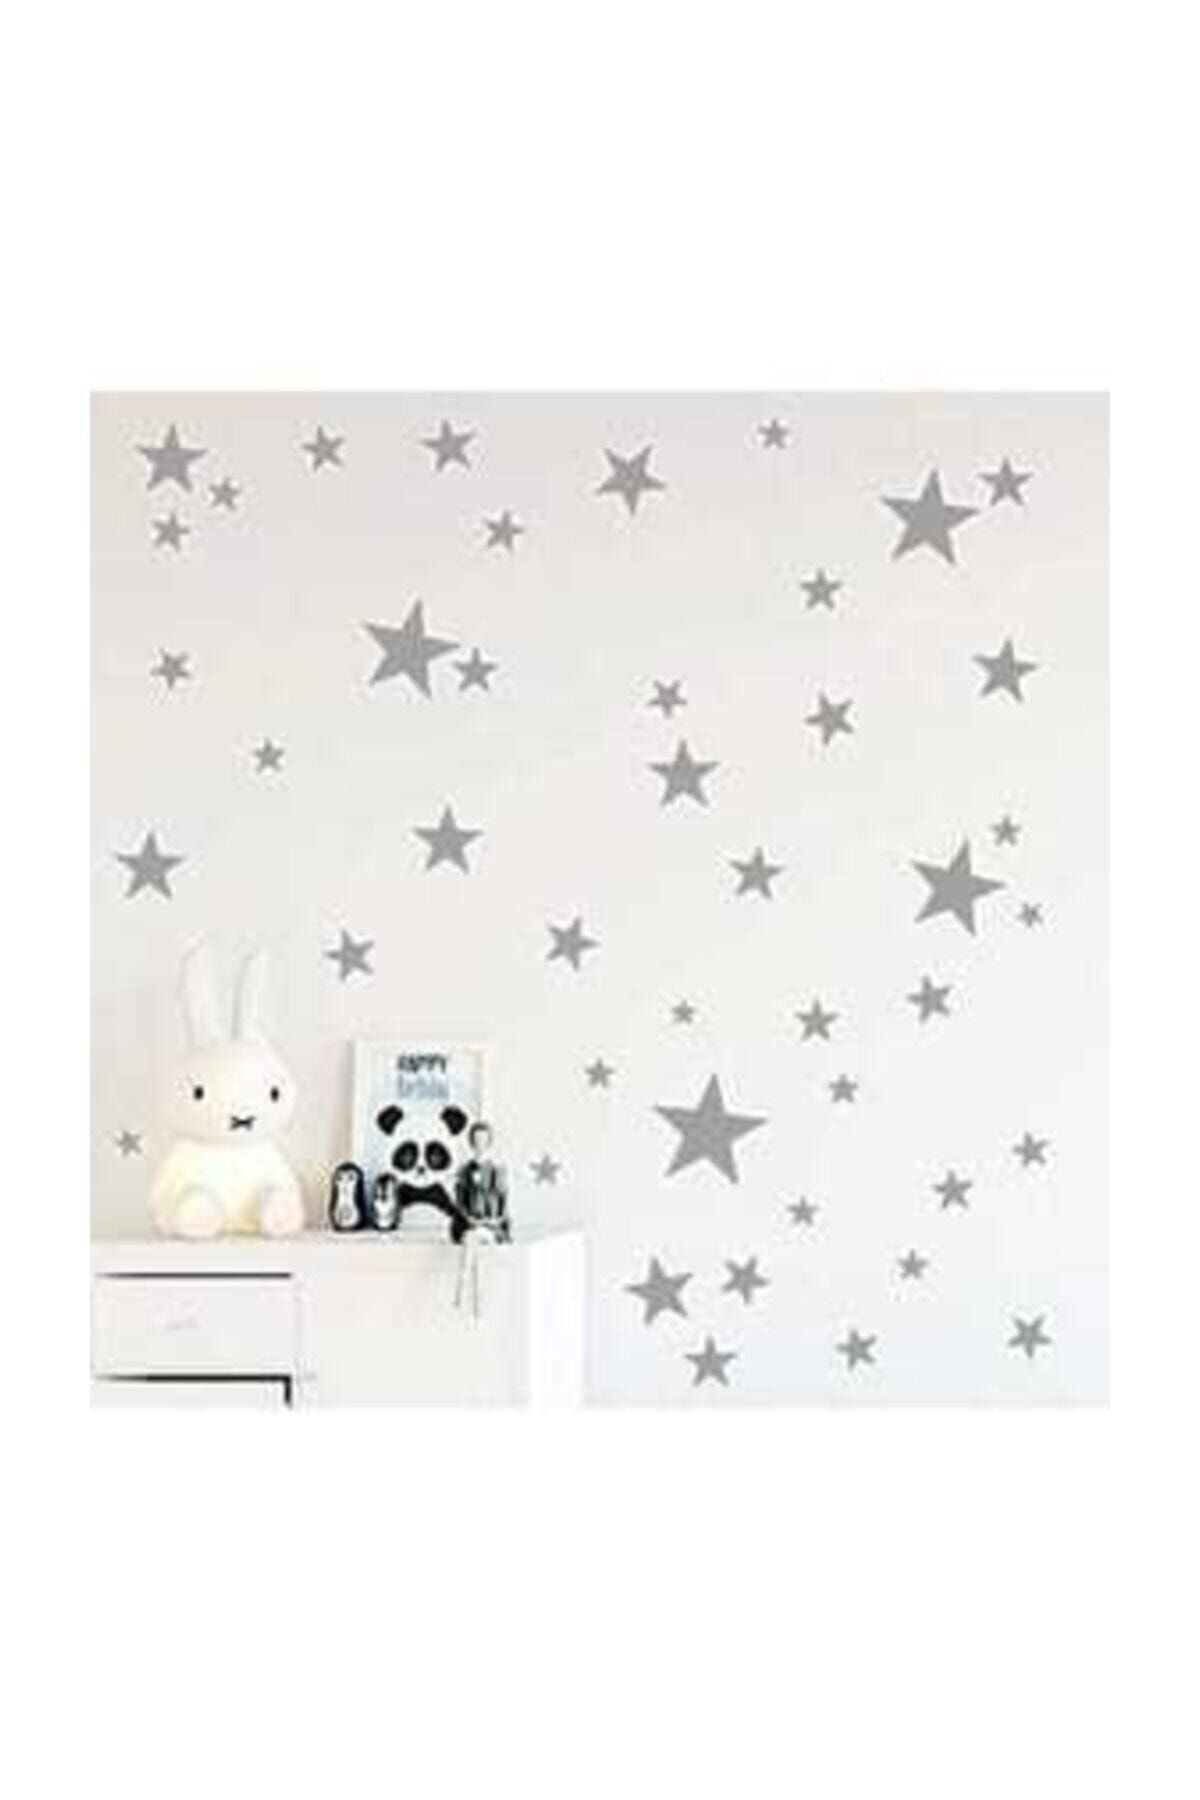 dekorasyonsepetim Yıldız Duvar Sticker 3-4-5 Cm 100 Adet